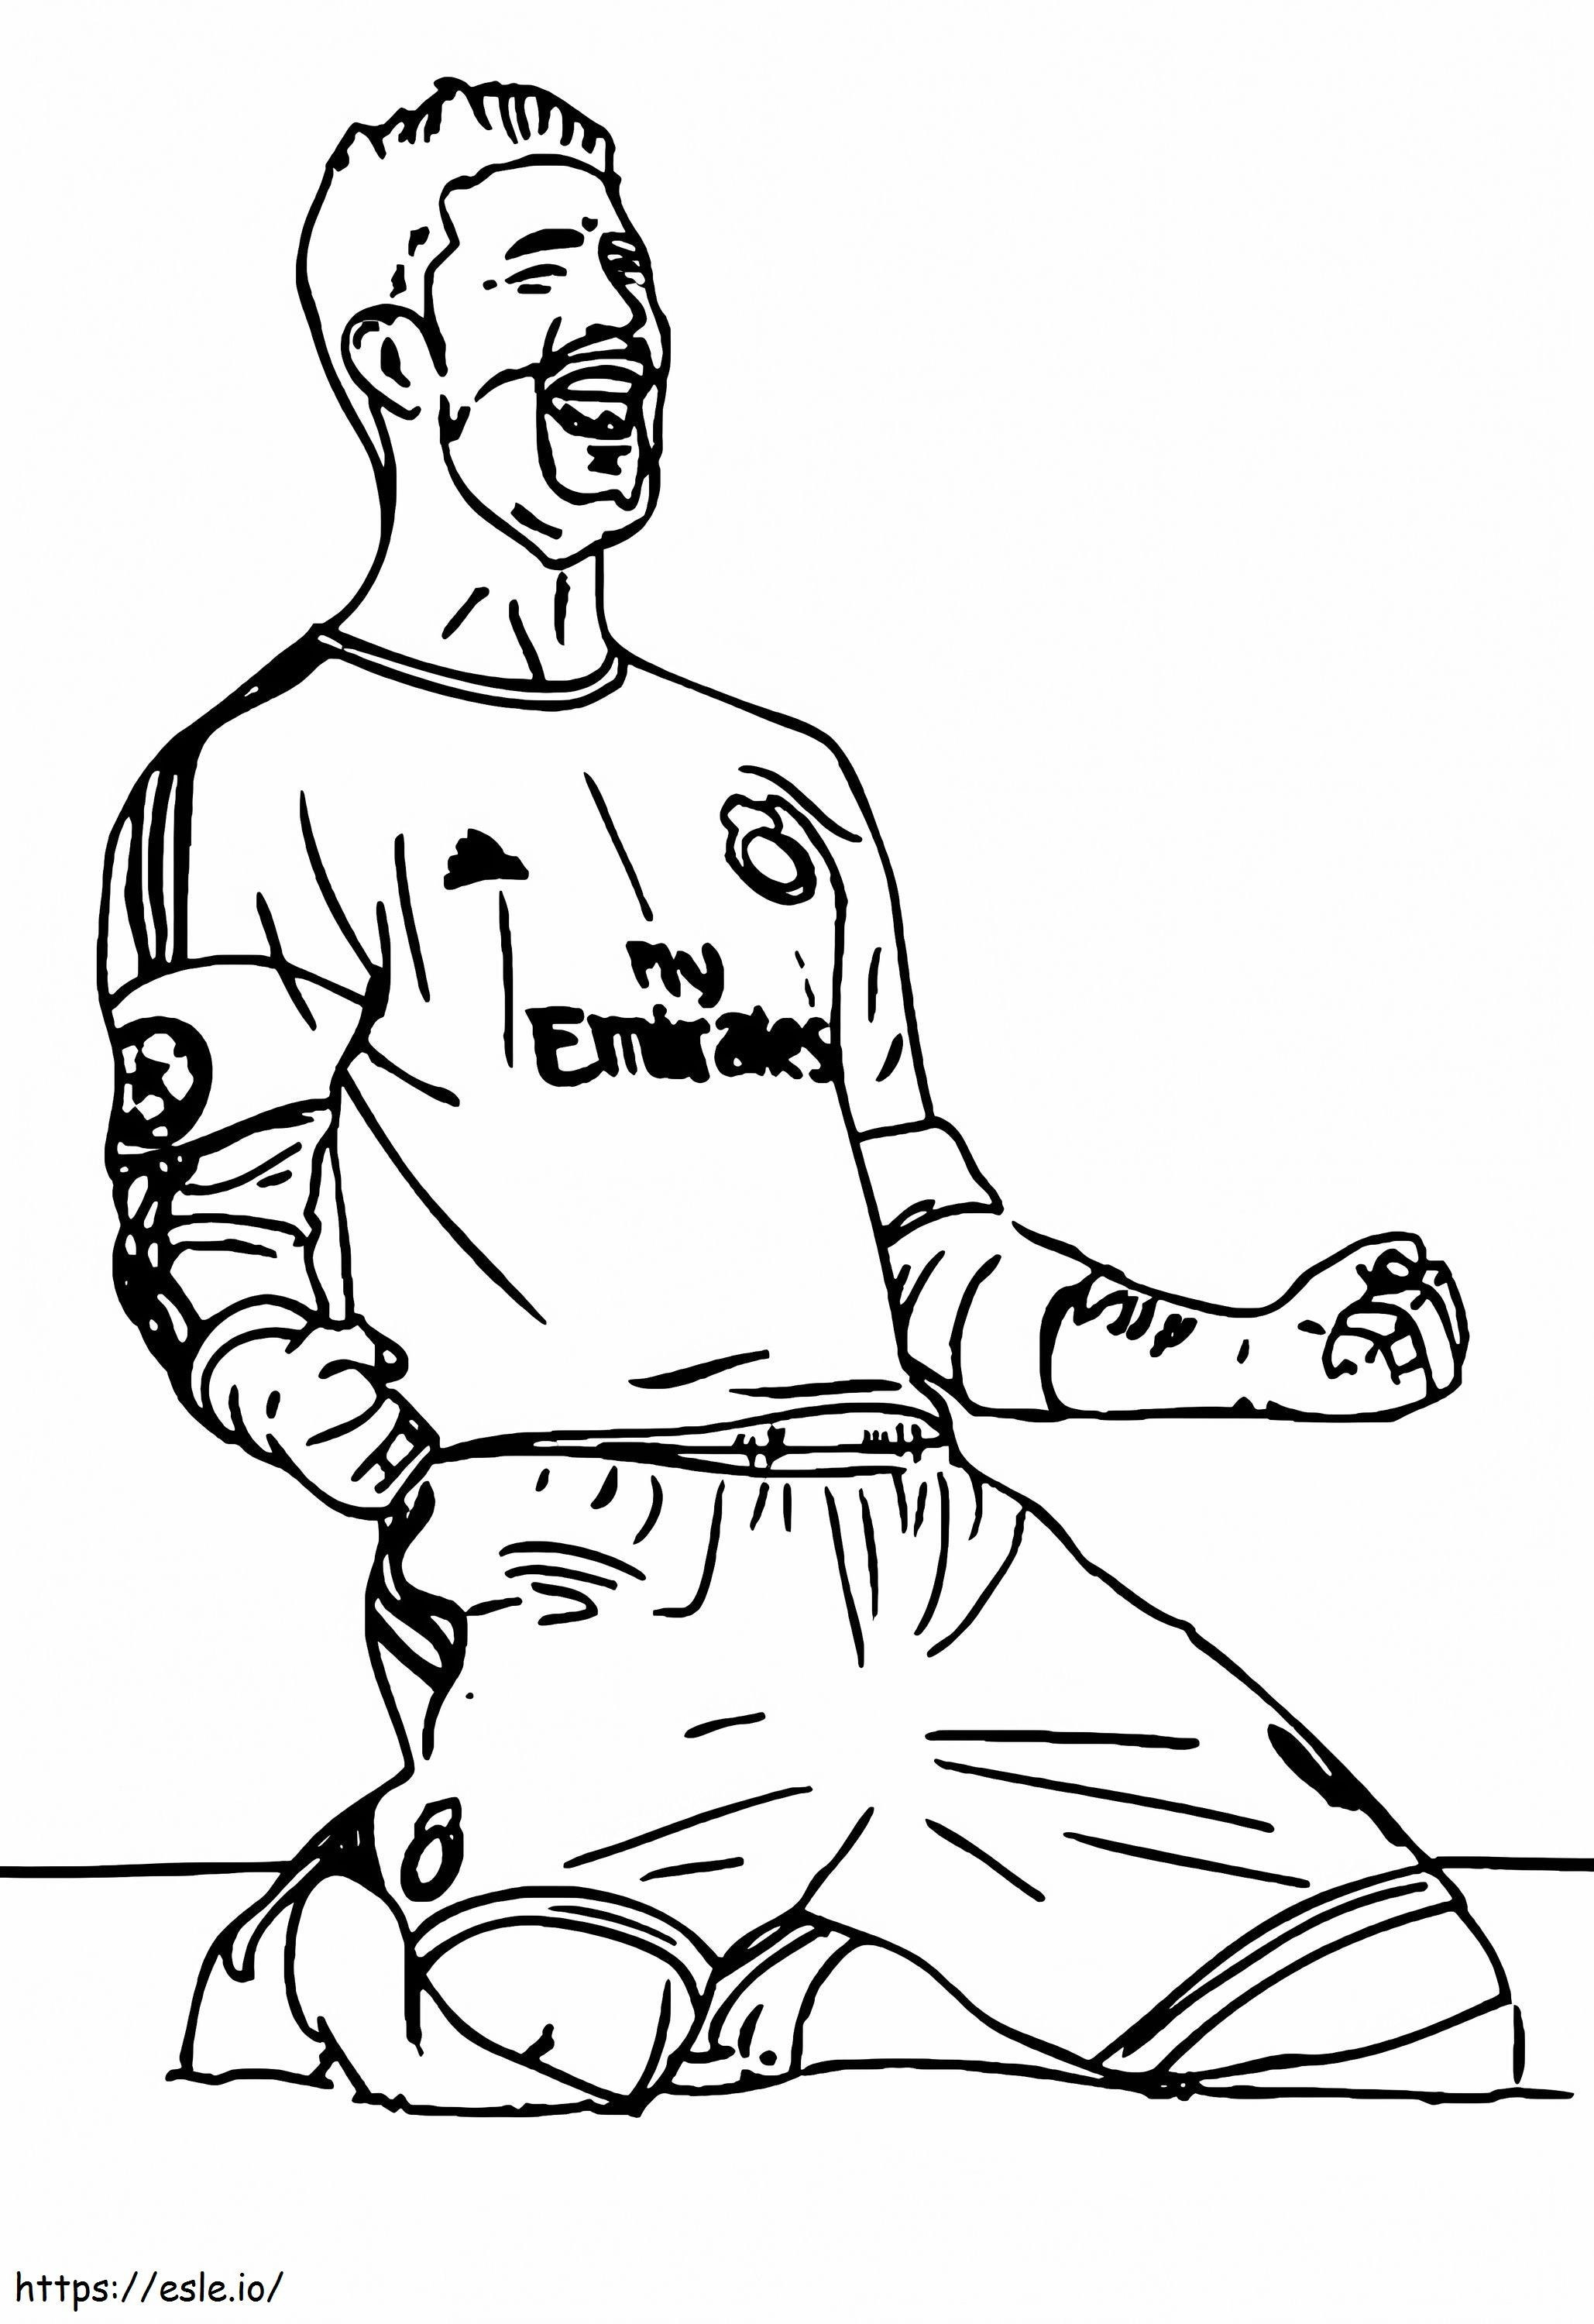 Sergio Ramos 3 coloring page